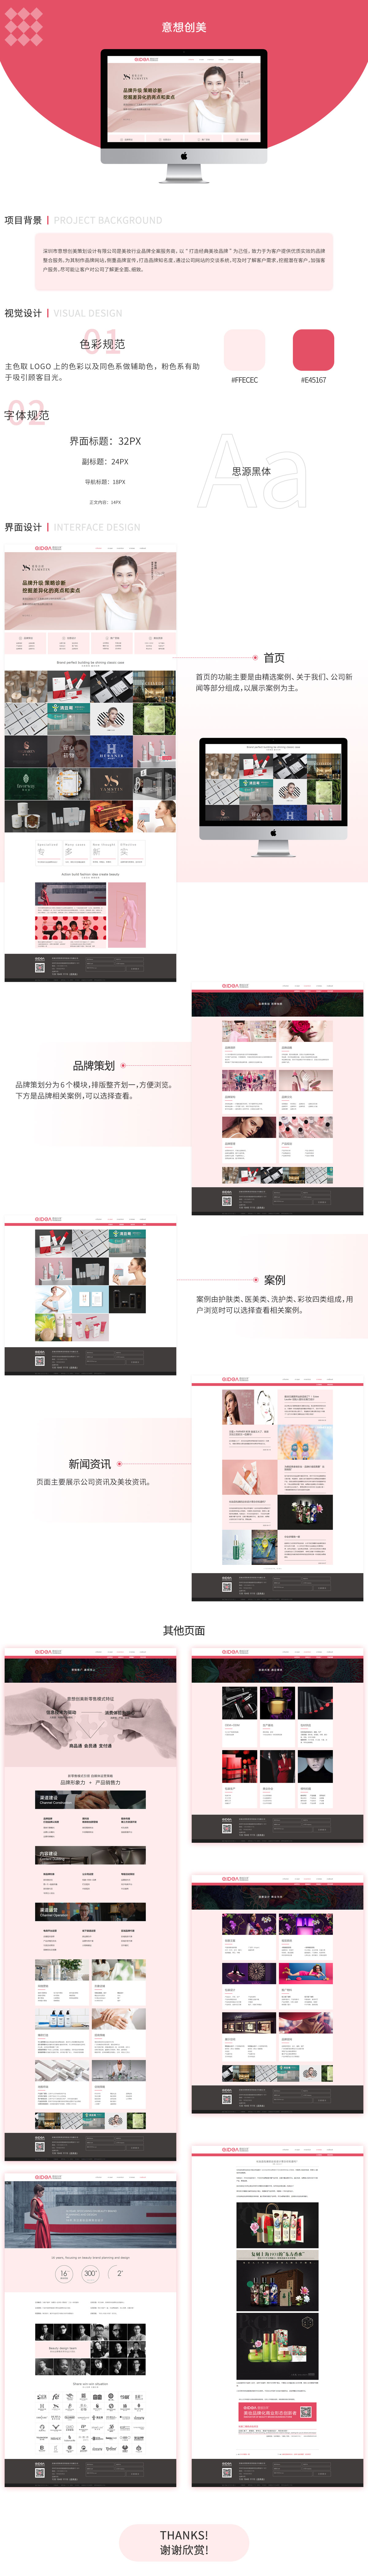 深圳意想创美策划设计有限企业网站案例